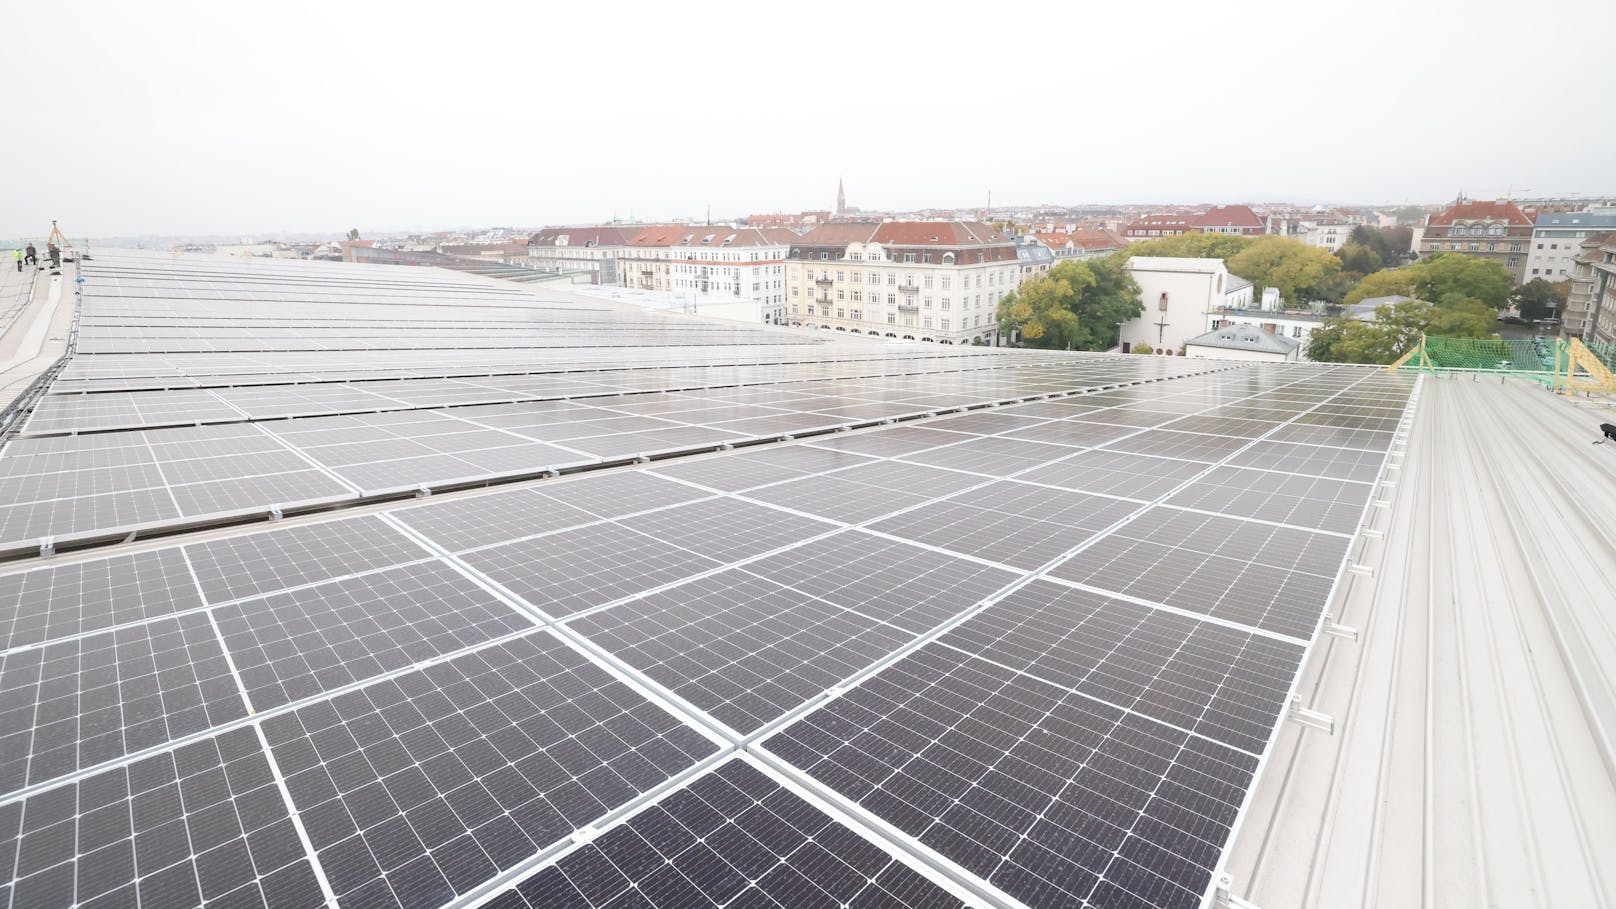 Sonnenenergie wird am Dach der Stadthalle produziert. 